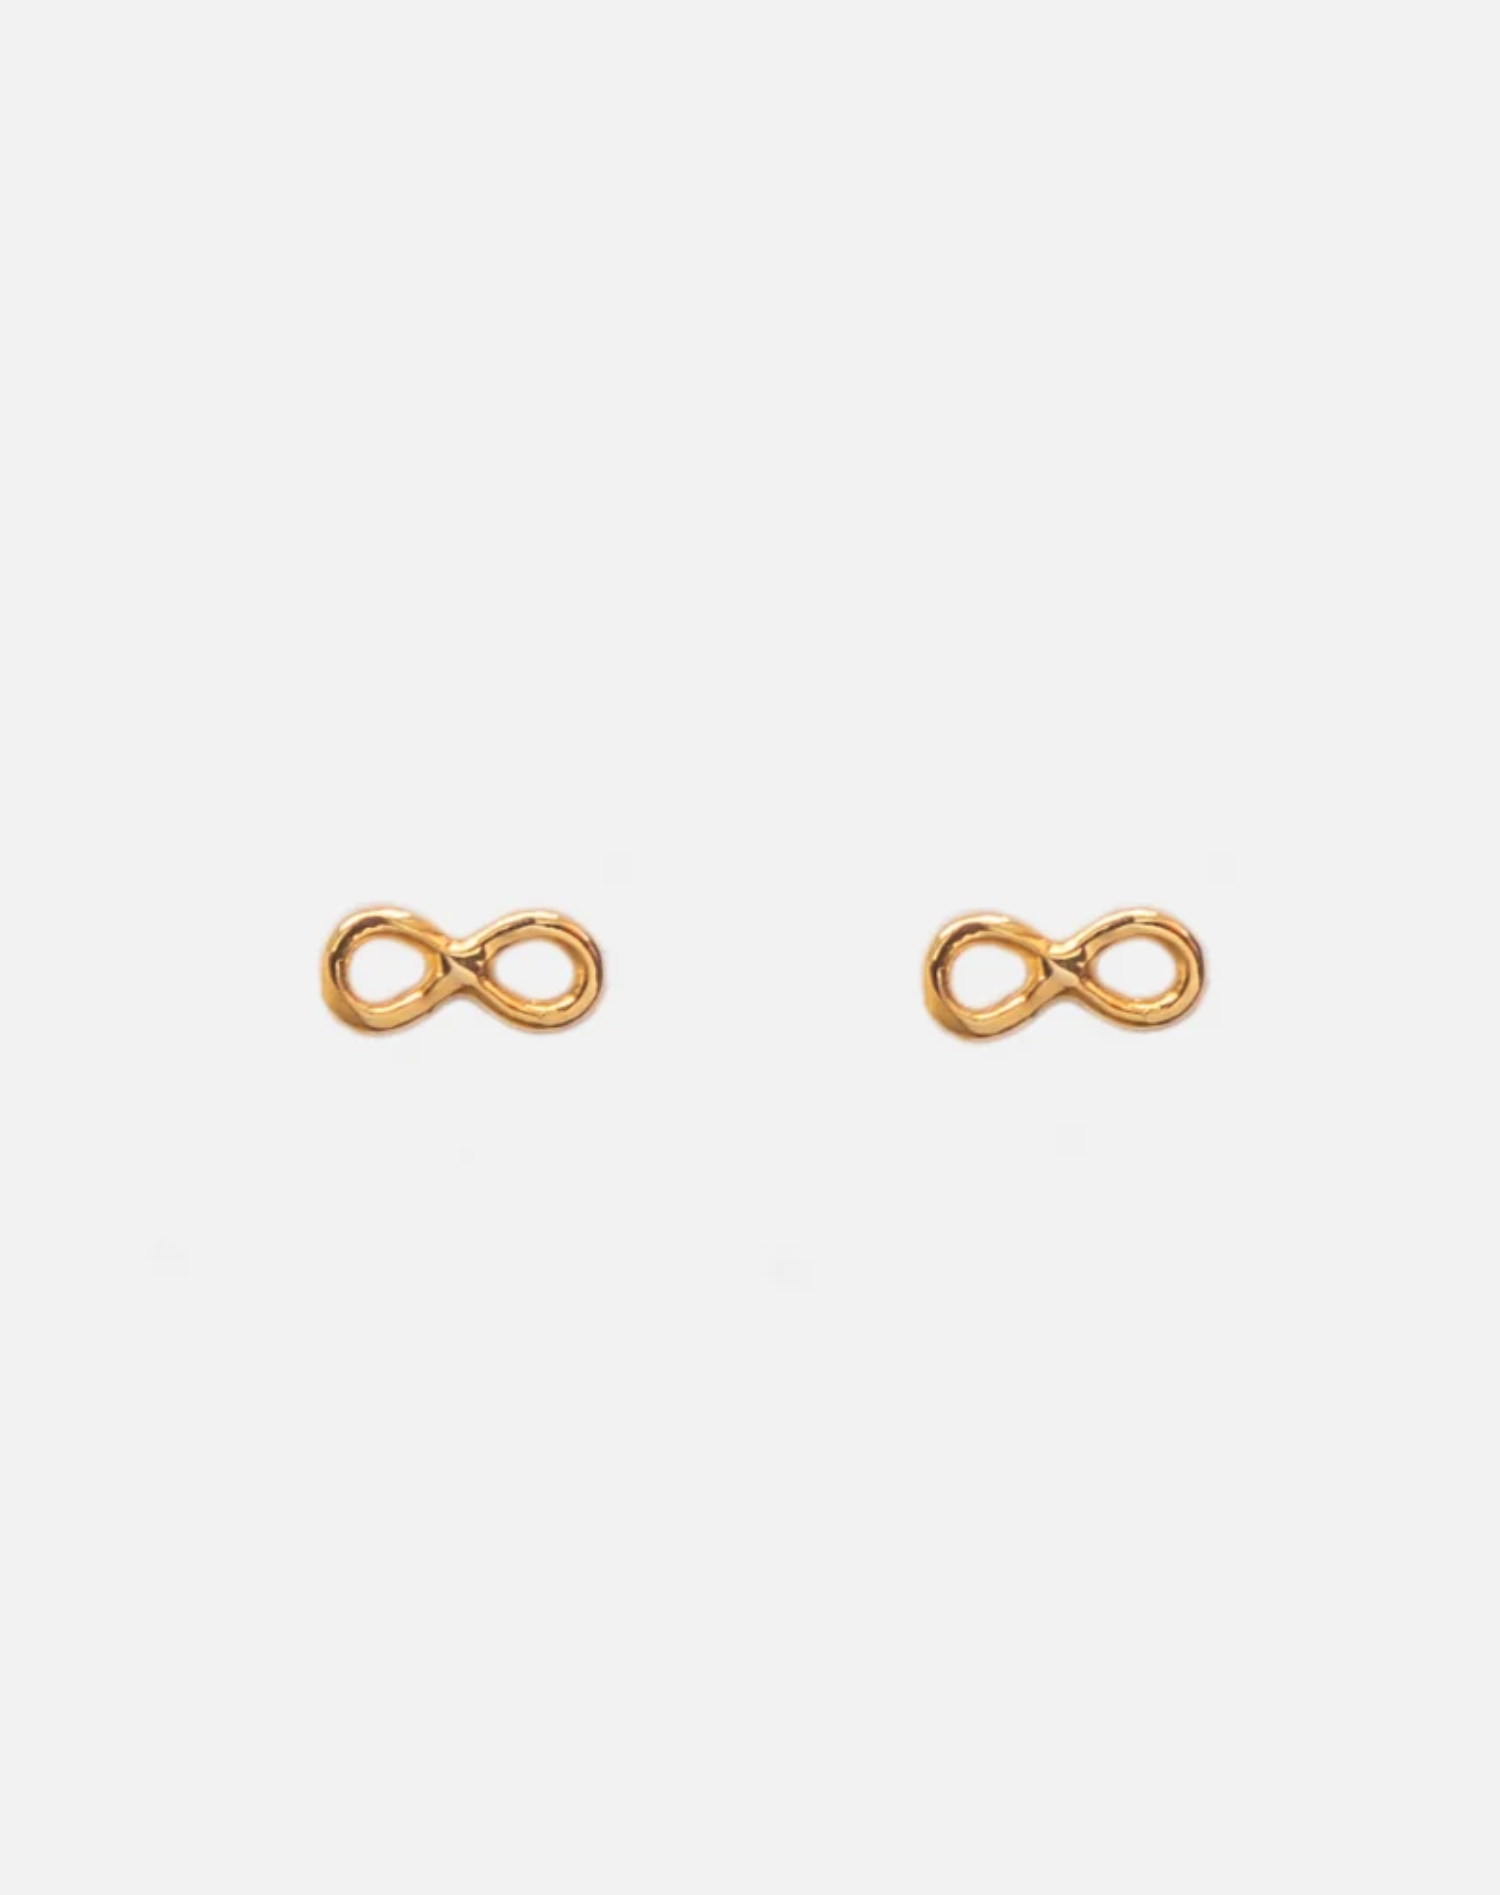 Infinity Earrings Sterling Golden Stud Earrings Figure 8 Twisted Earrings  Perfect For Women & Girl